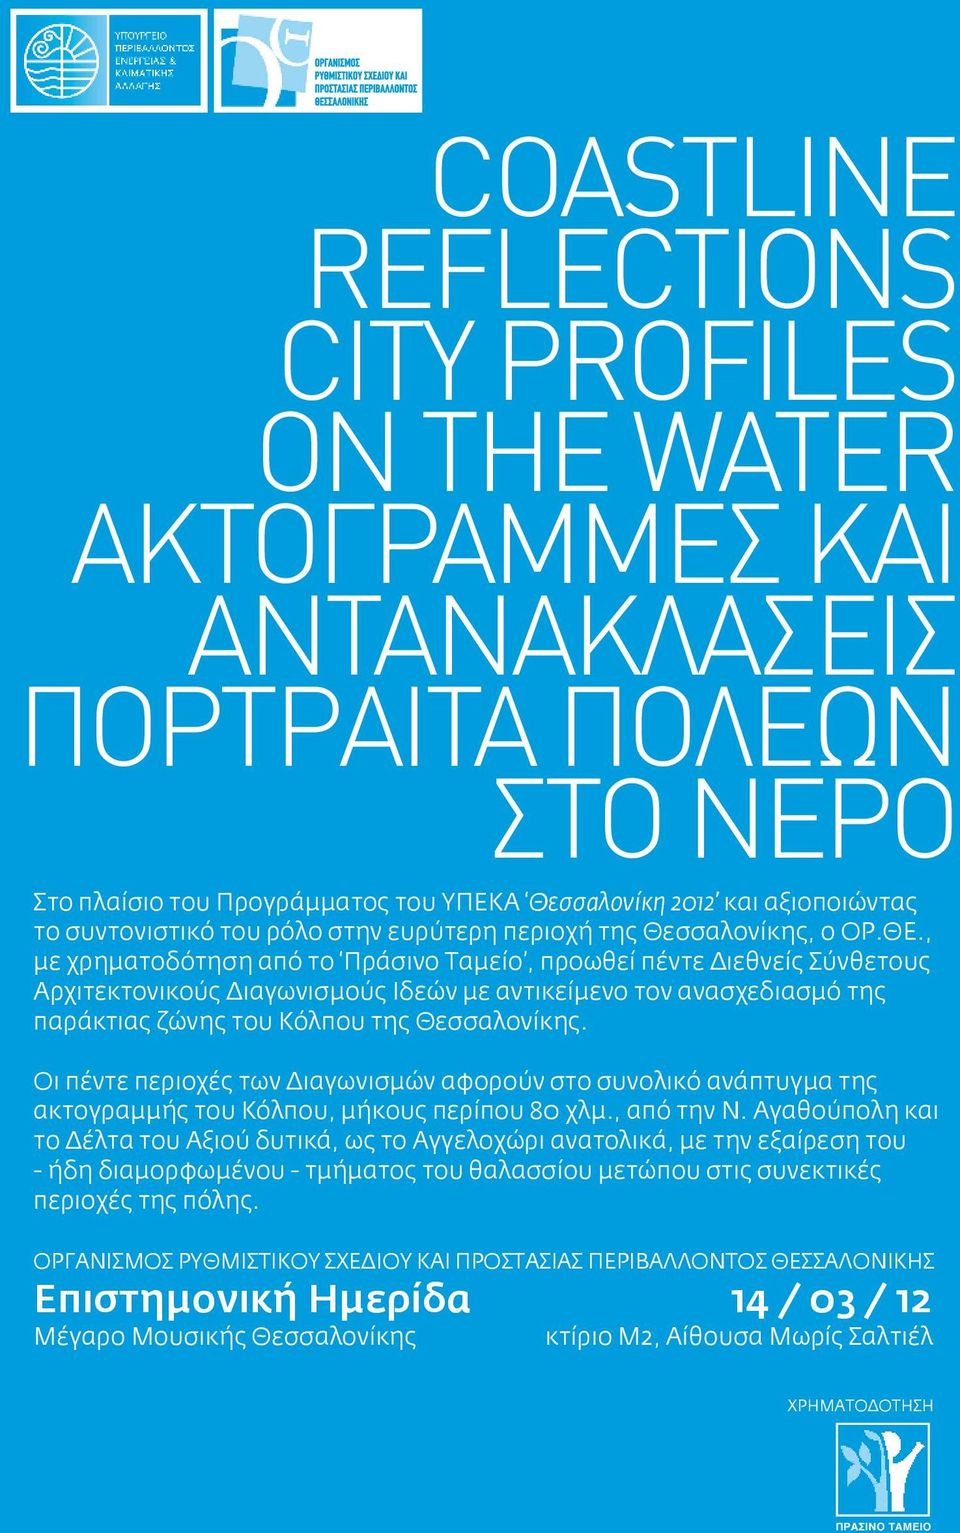 , με χρηματοδότηση από το Πράσινο Ταμείο, προωθεί πέντε Διεθνείς Σύνθετους Αρχιτεκτονικούς Διαγωνισμούς Ιδεών με αντικείμενο τον ανασχεδιασμό της παράκτιας ζώνης του Κόλπου της Θεσσαλονίκης.